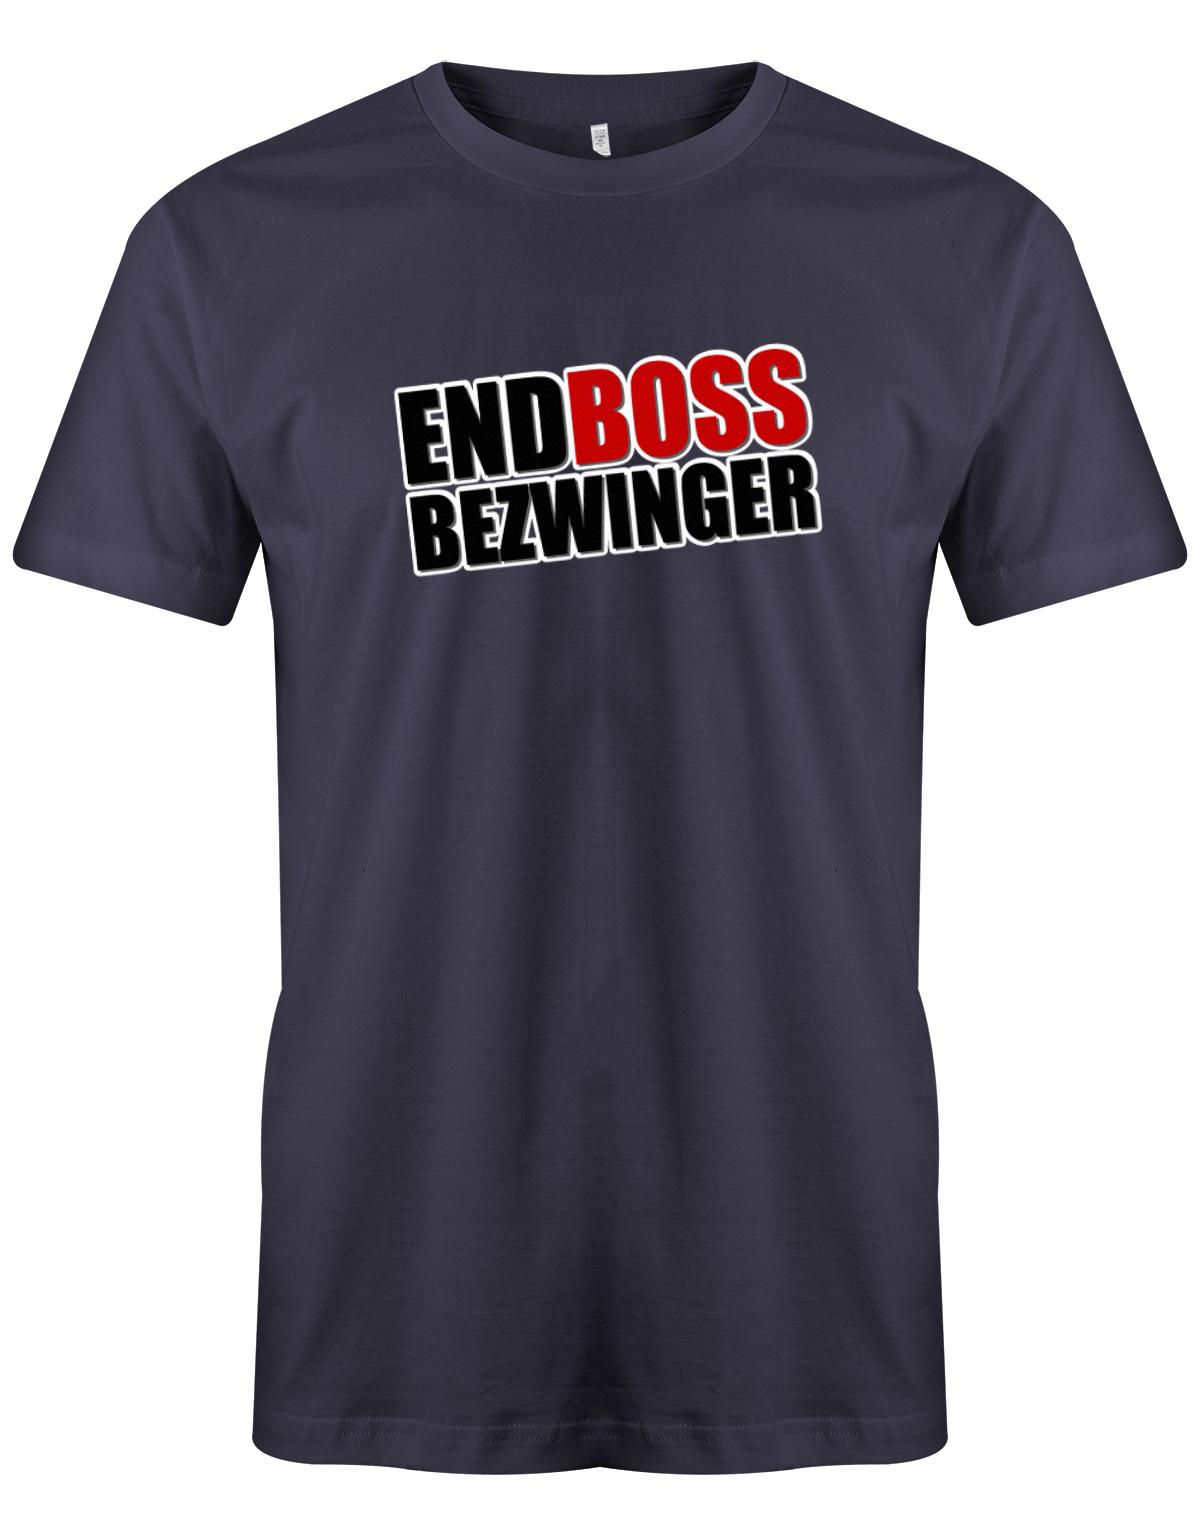 Endboss-Bezwinger-Gamer-Herren-Shirt-Navy